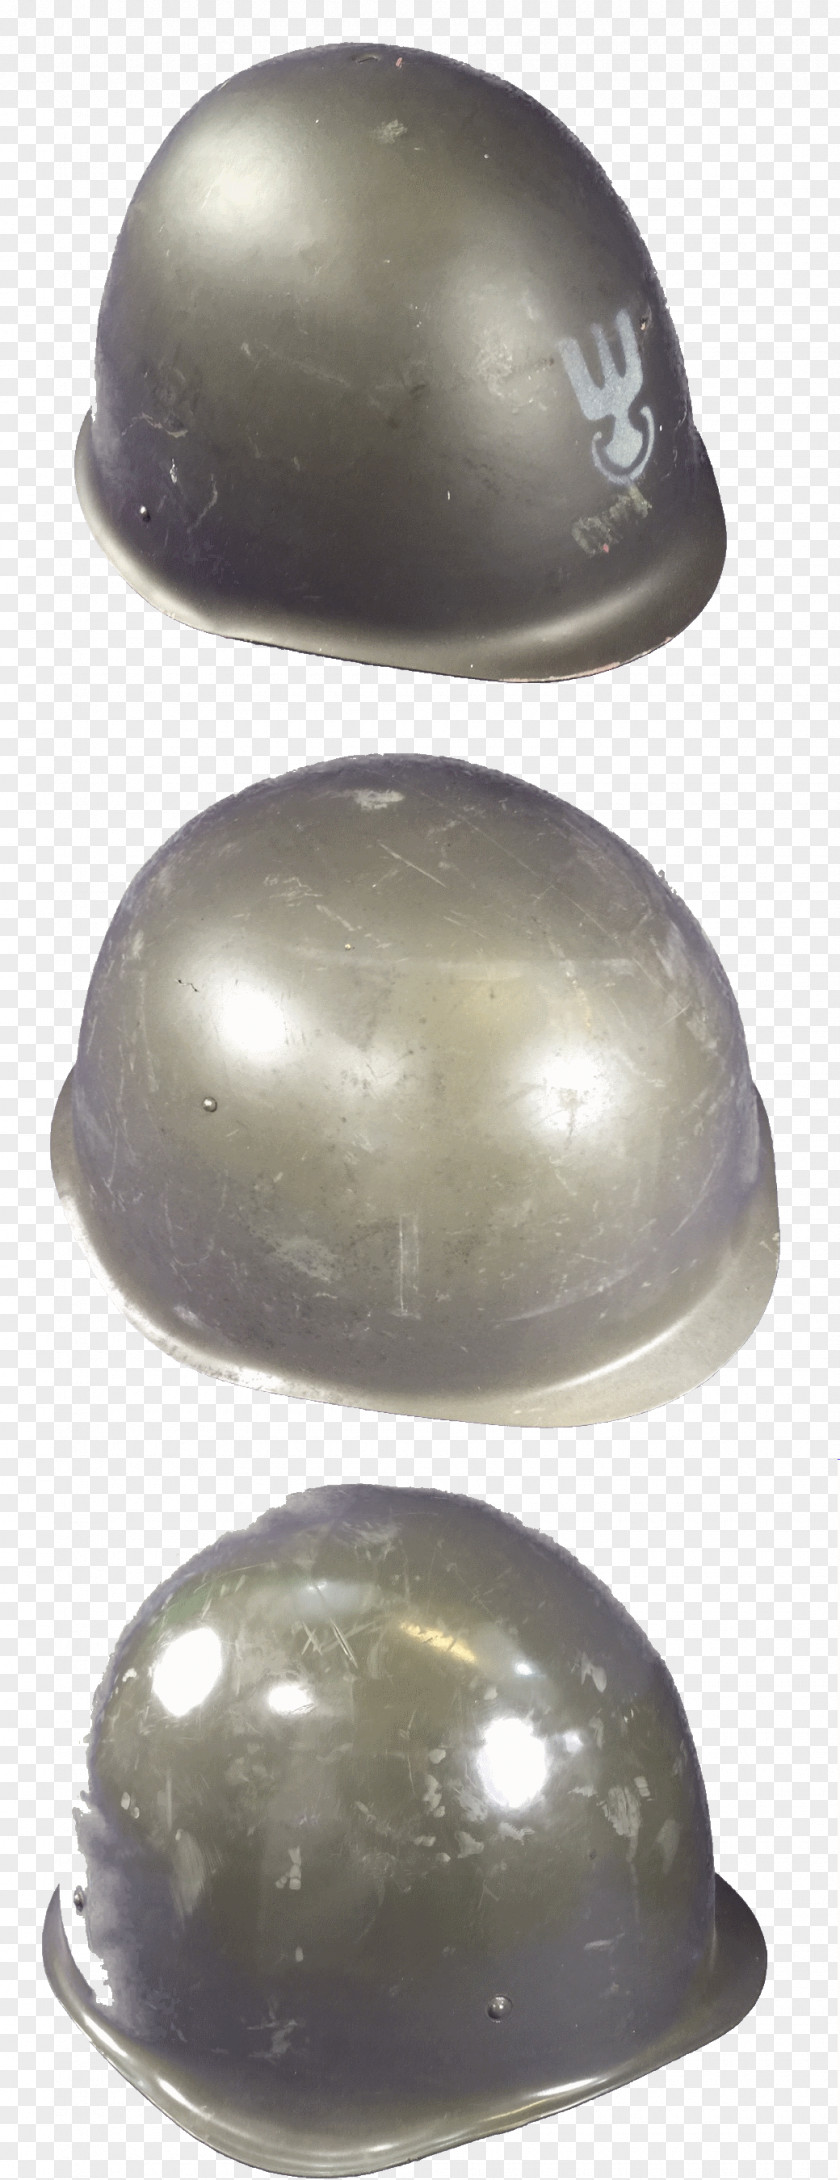 Army Helmet Sphere PNG